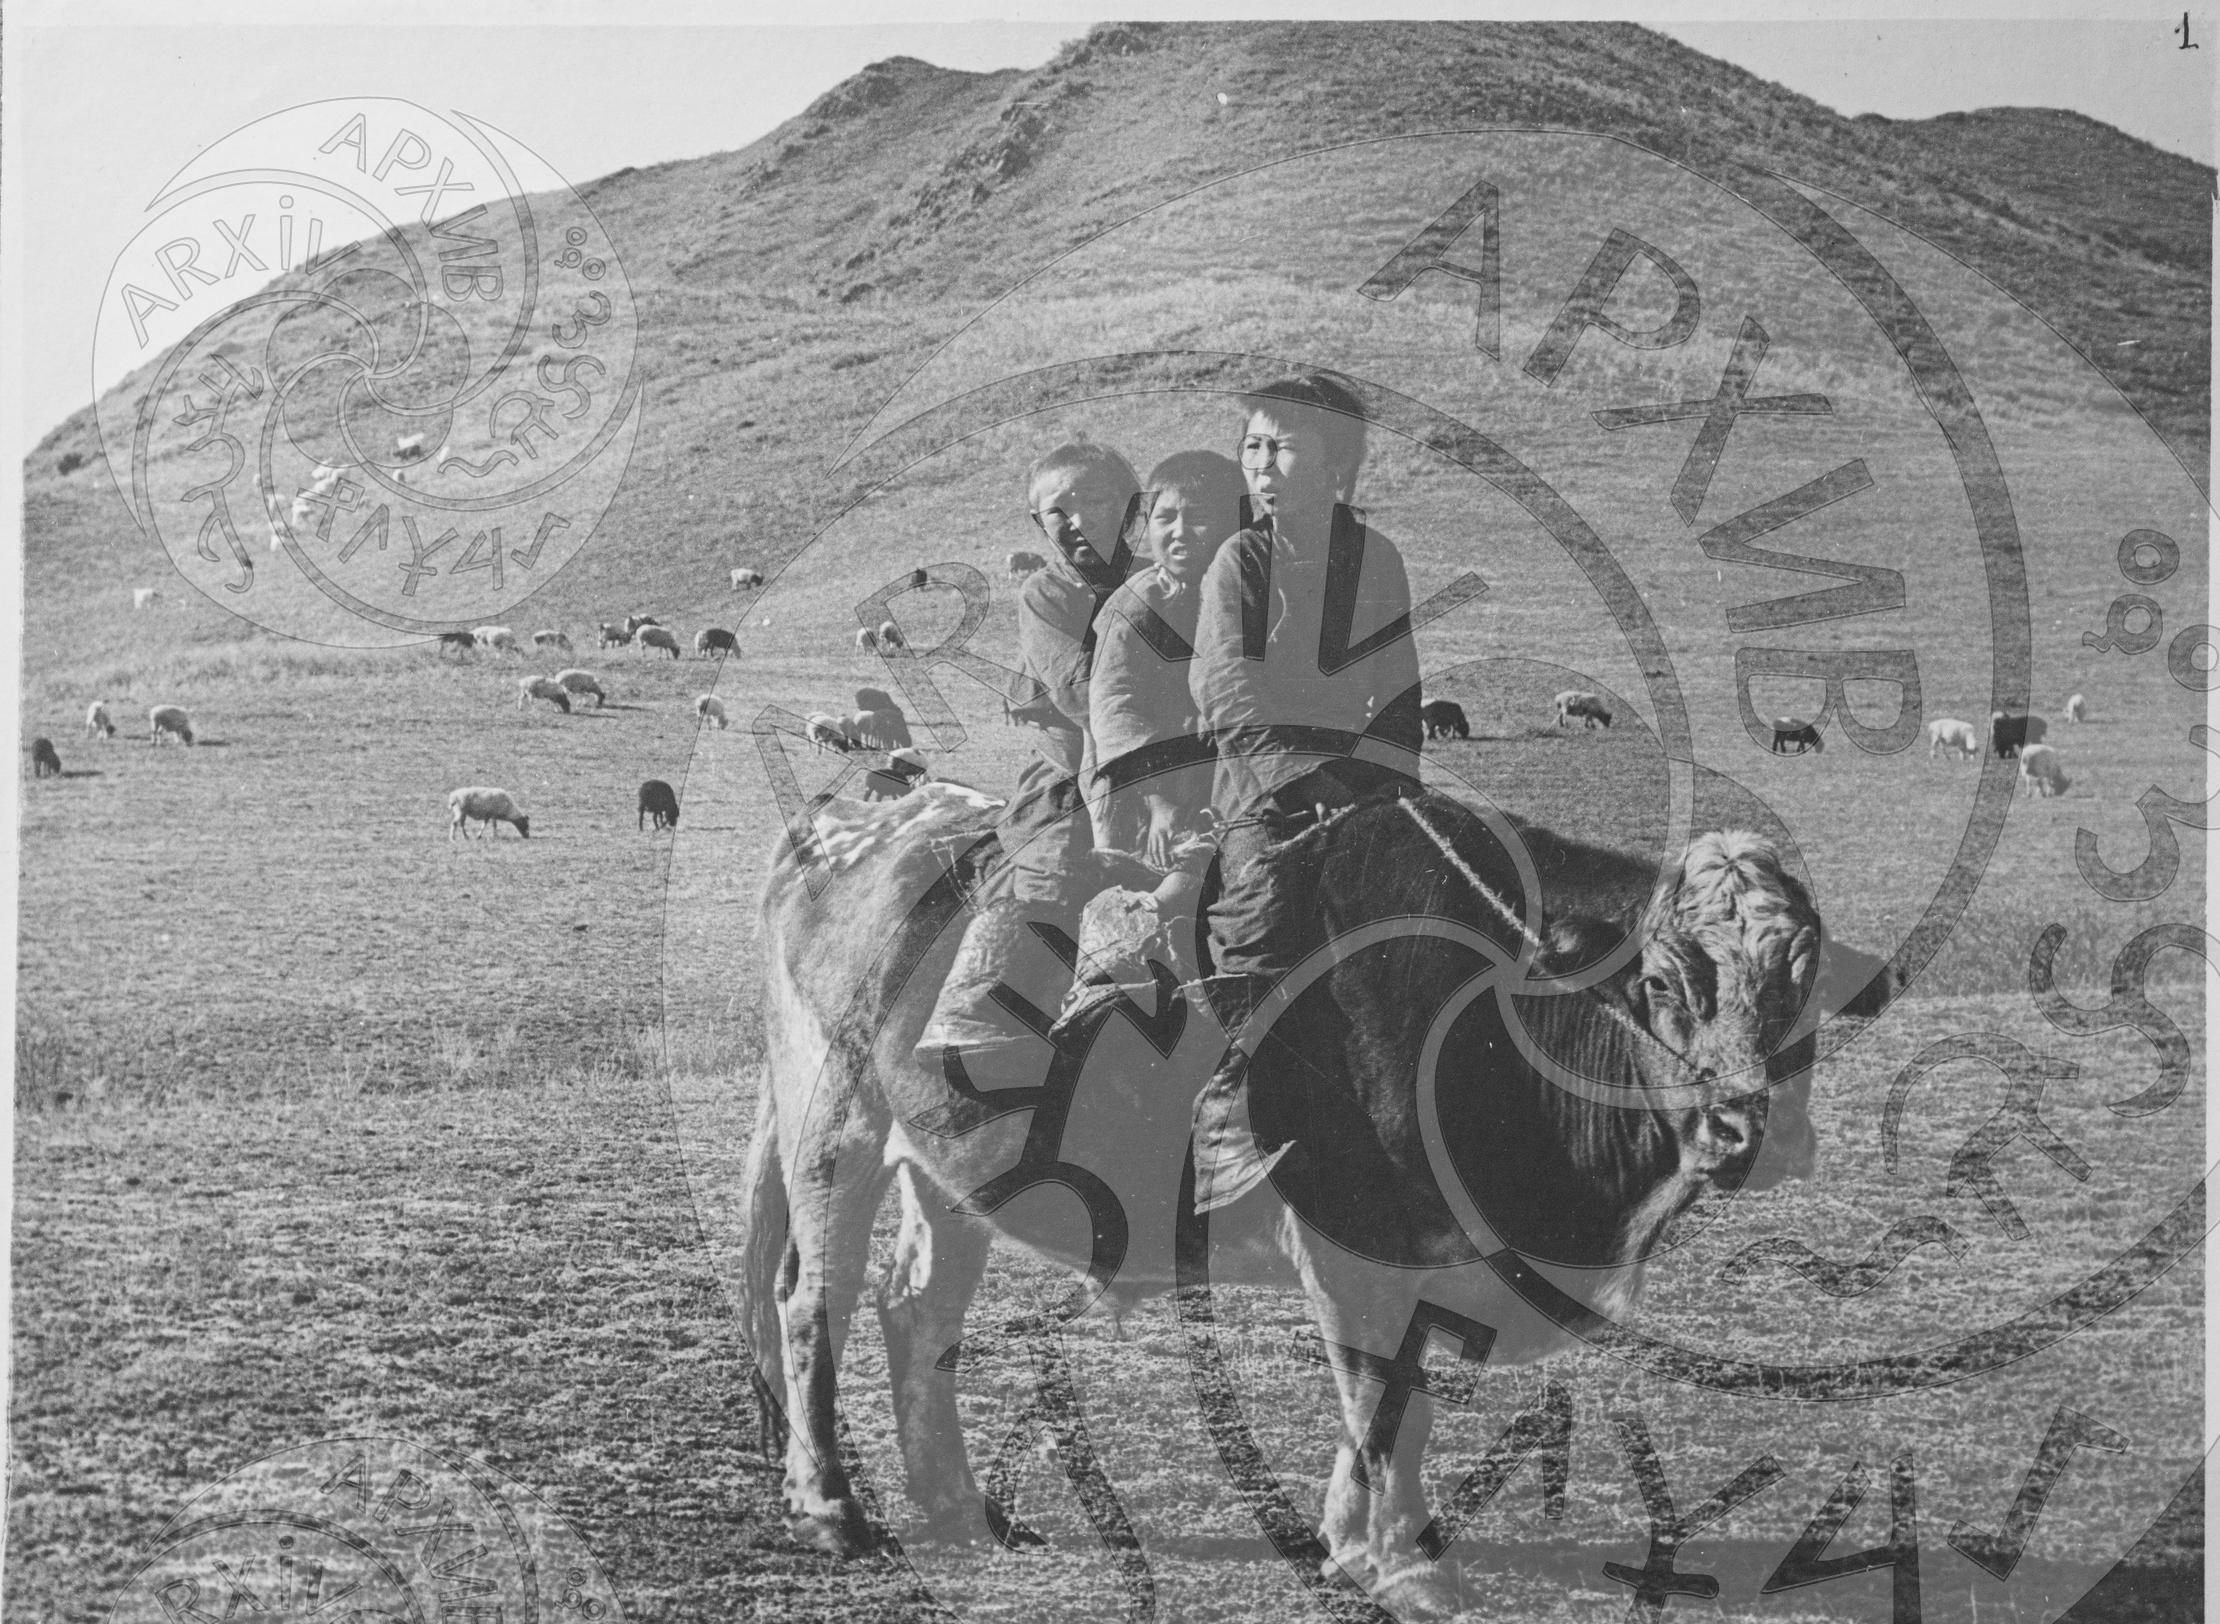 Пастухи на быке. Дети аратов с пяти-шестилетнего возраста были незаменимыми помощниками родителей при пастьбе скота